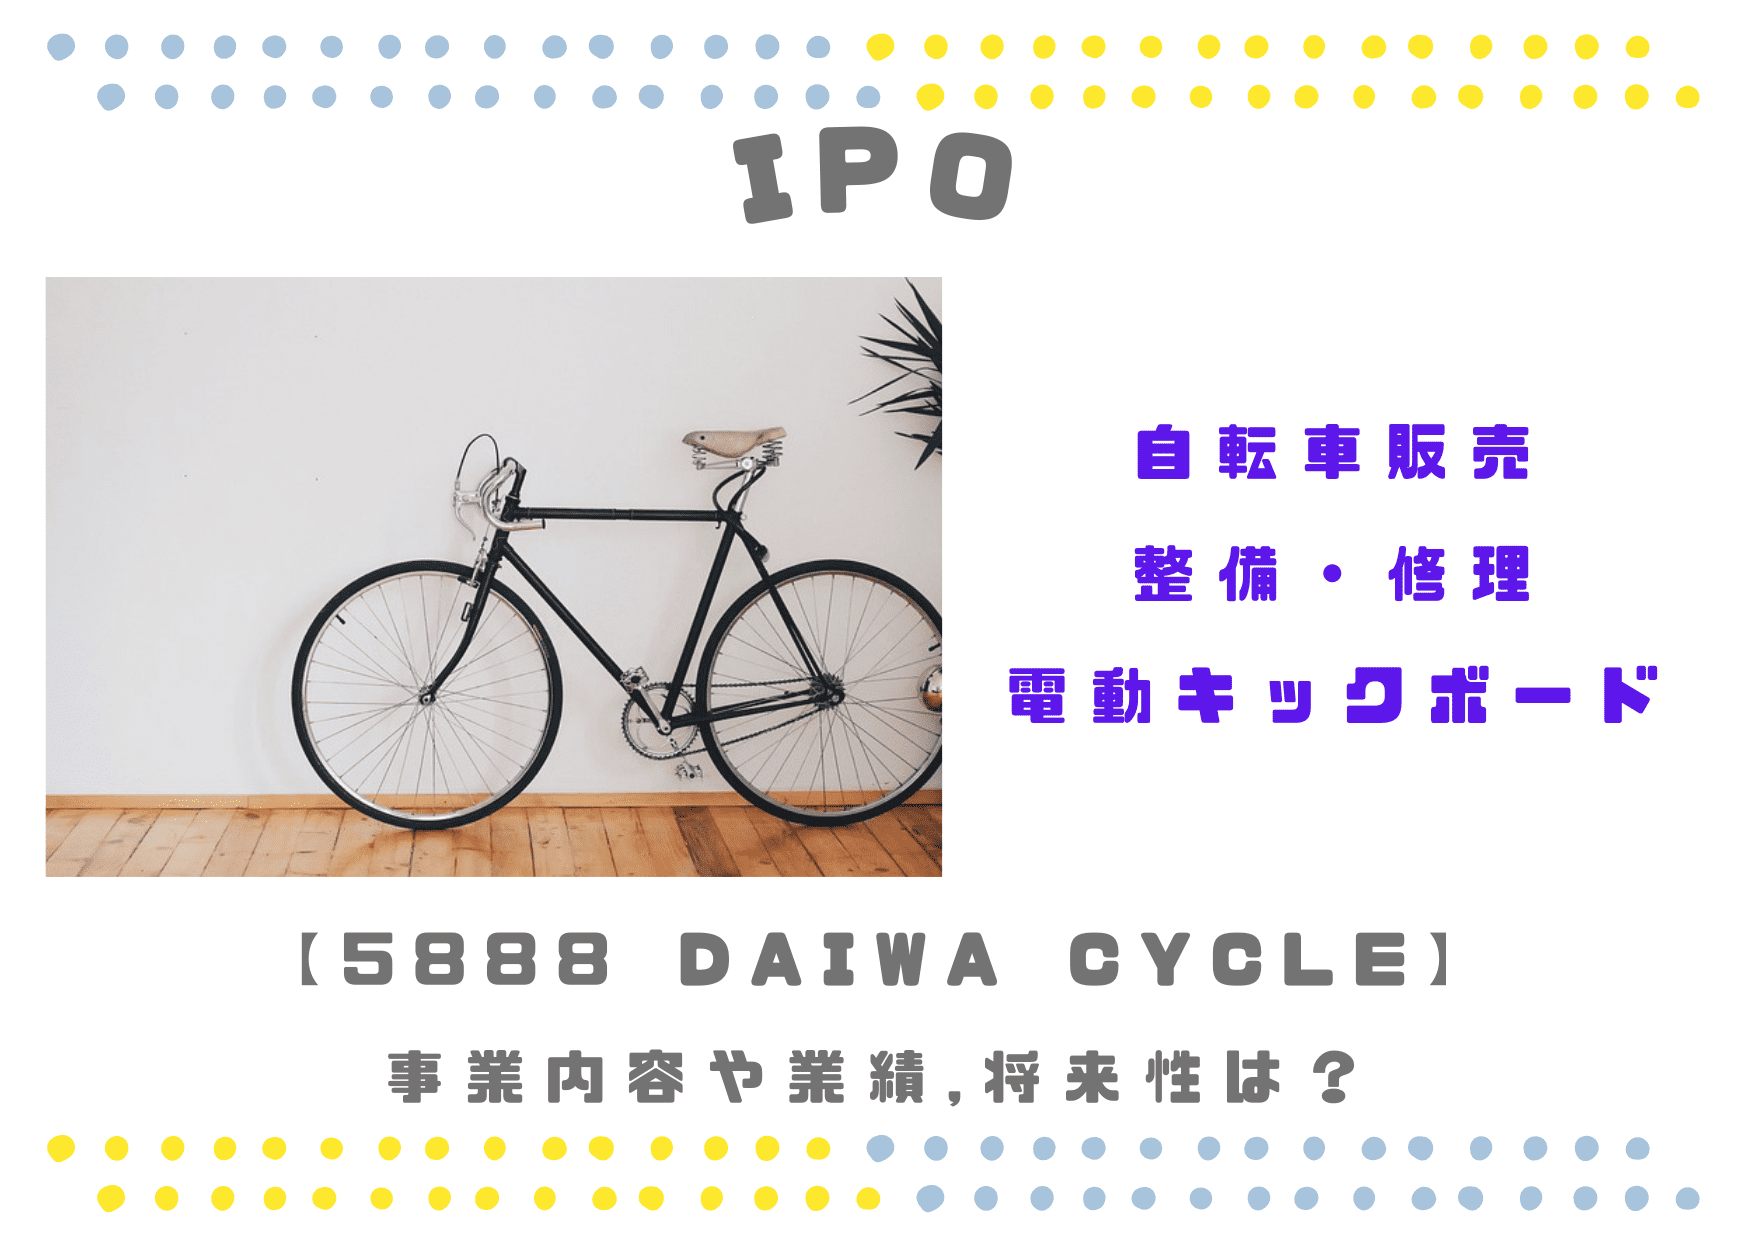 自転車販売/整備IPO 5888 DAIWA CYCLEの業績や将来性は？